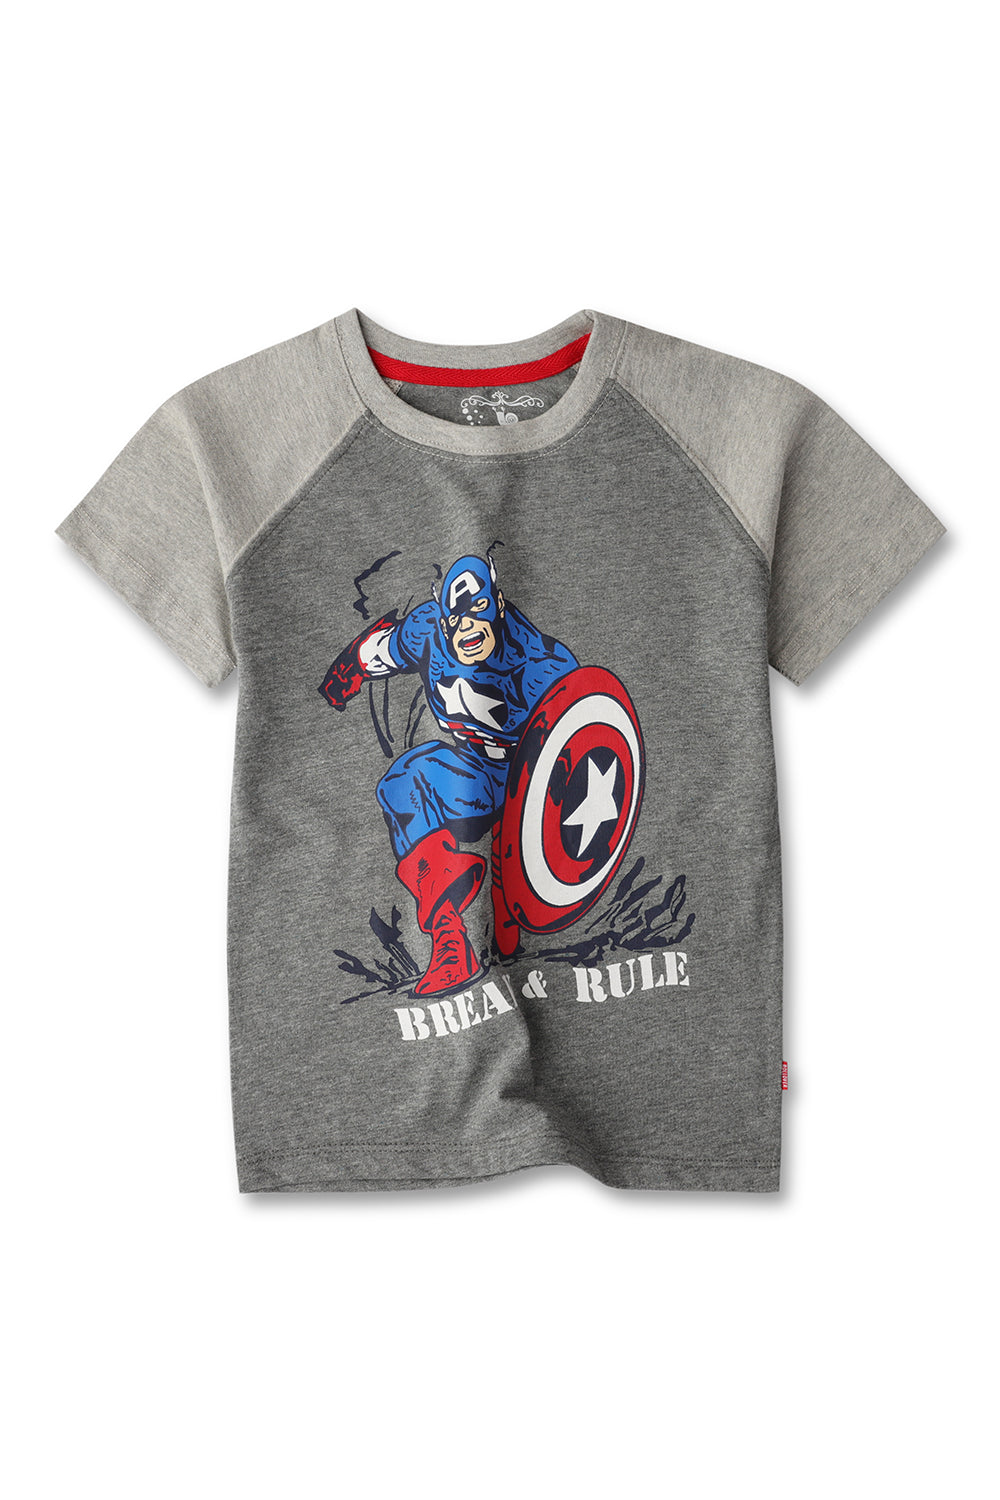 Boy's Captain America Graphic Tee